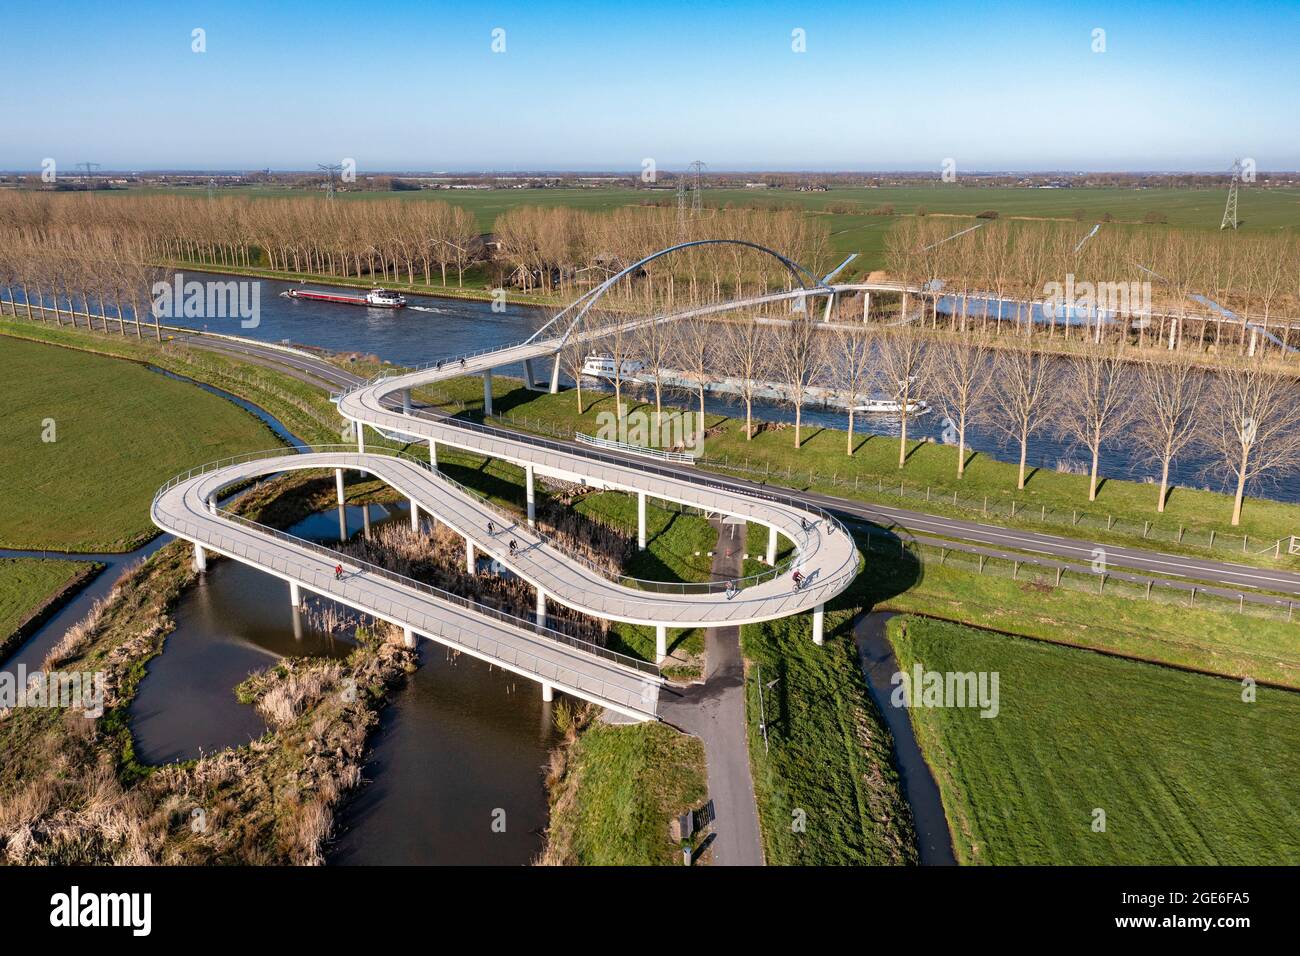 Niederlande, Nigtevecht, Linienbrug. Fuß- und Fahrradbrücke über den Amsterdam-Rhein-Kanal. Antenne. Stockfoto